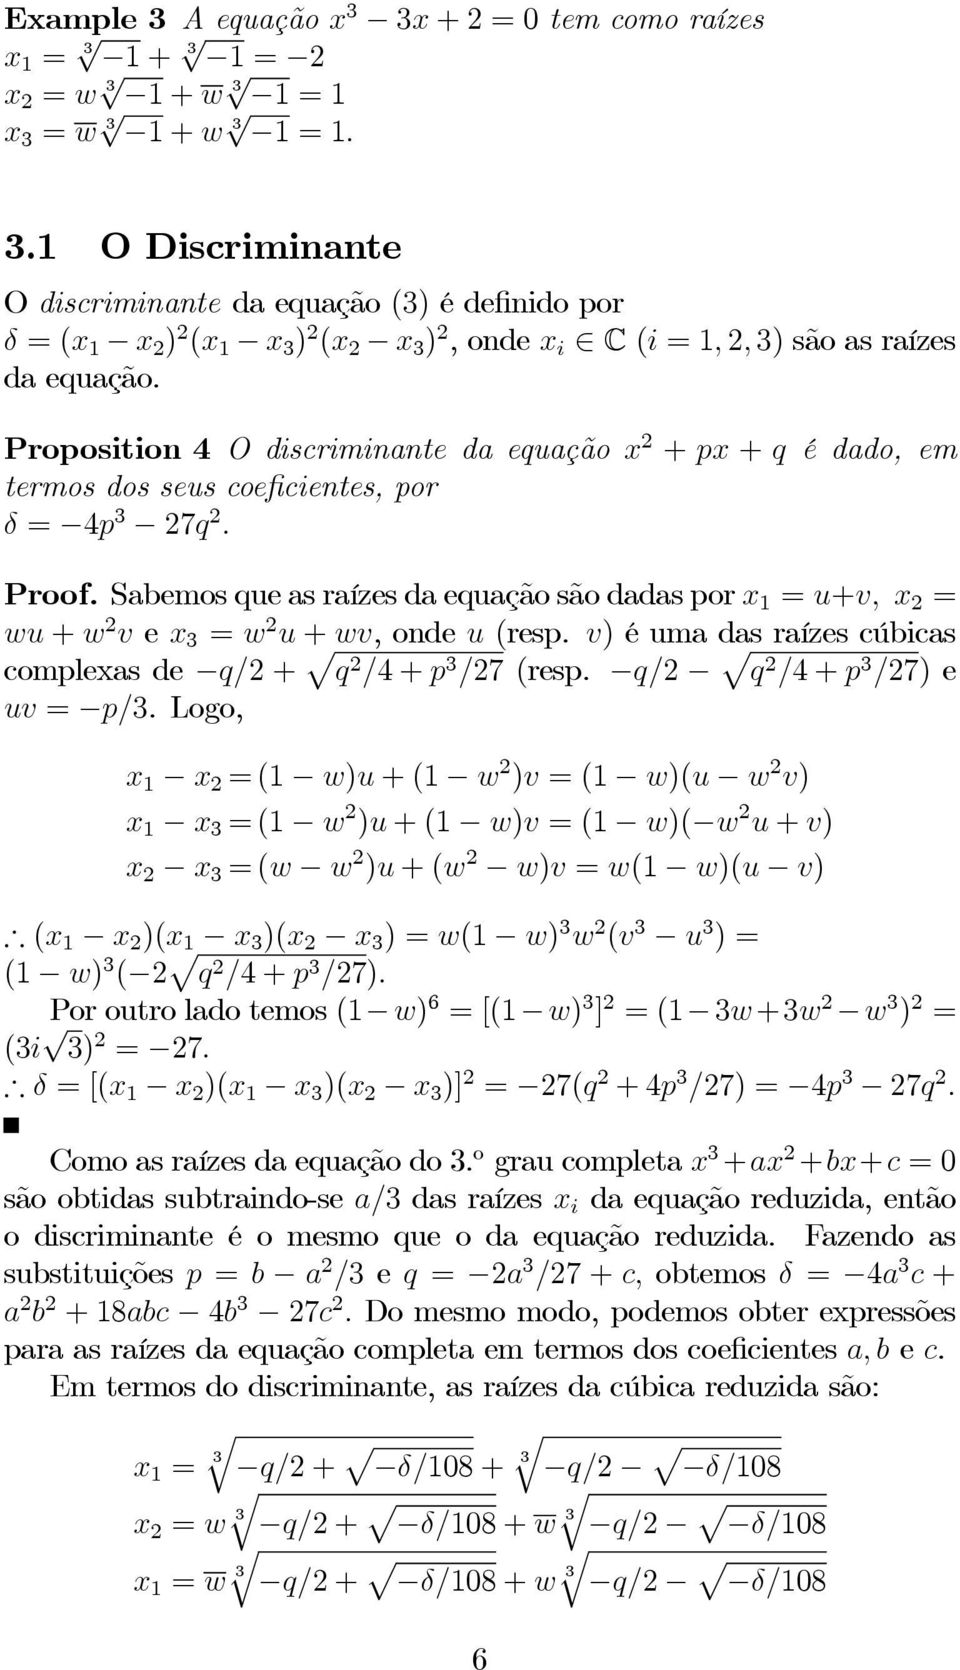 Proposition 4 O discriminante da euação x + px + é dado, em termos dos seus coeficientes, por δ = 4p 7. Proof.